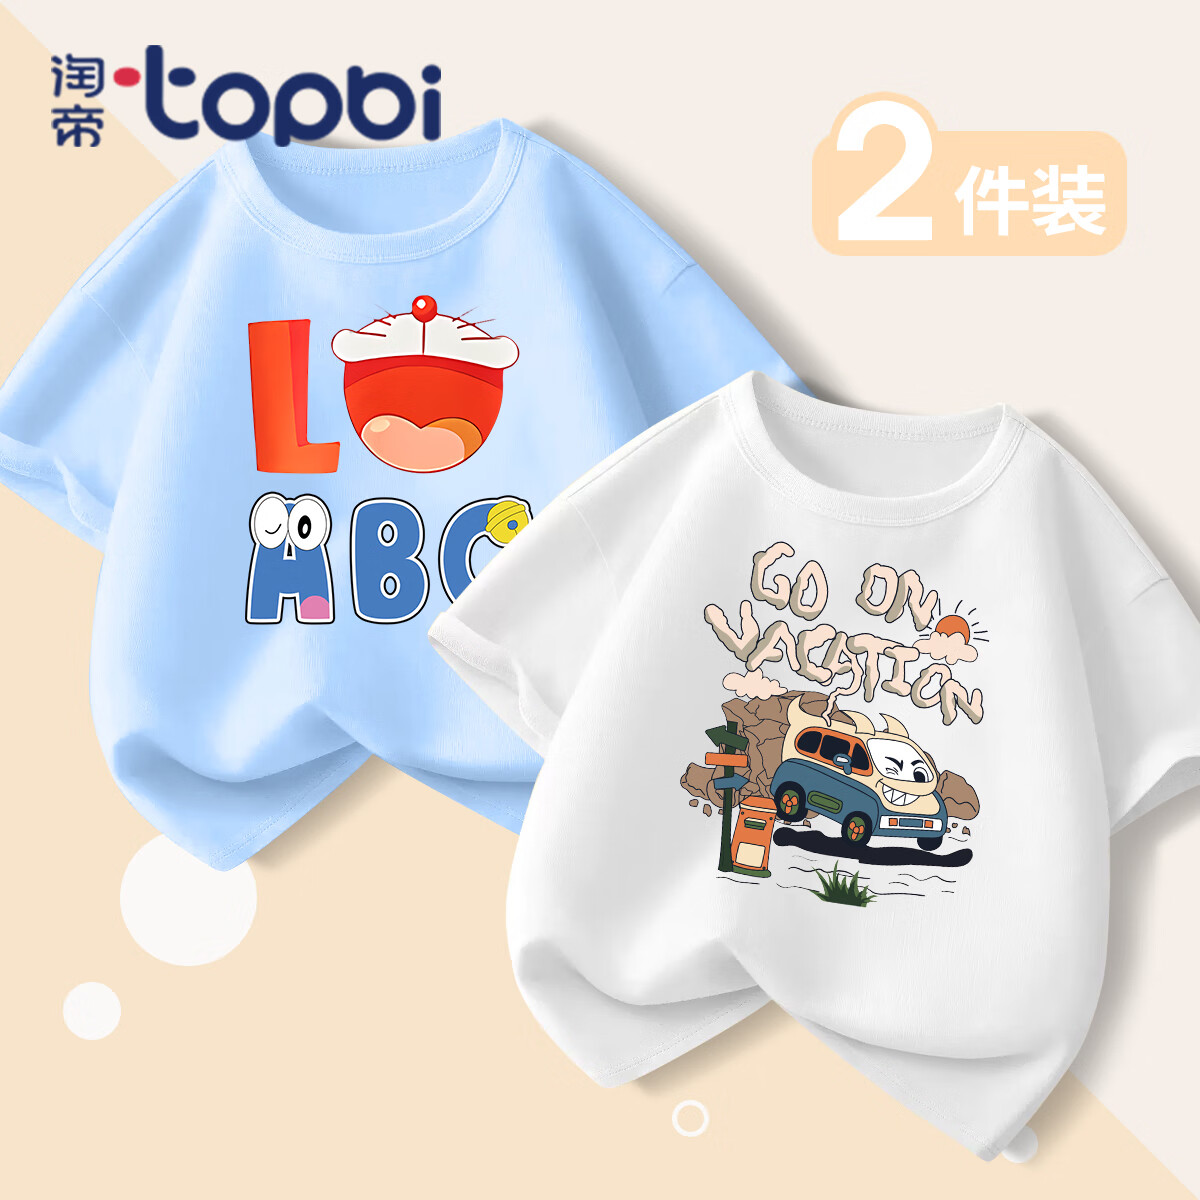 淘帝（TOPBI）儿童纯棉短袖T恤 2件 19.55元包邮、合每件9.77元